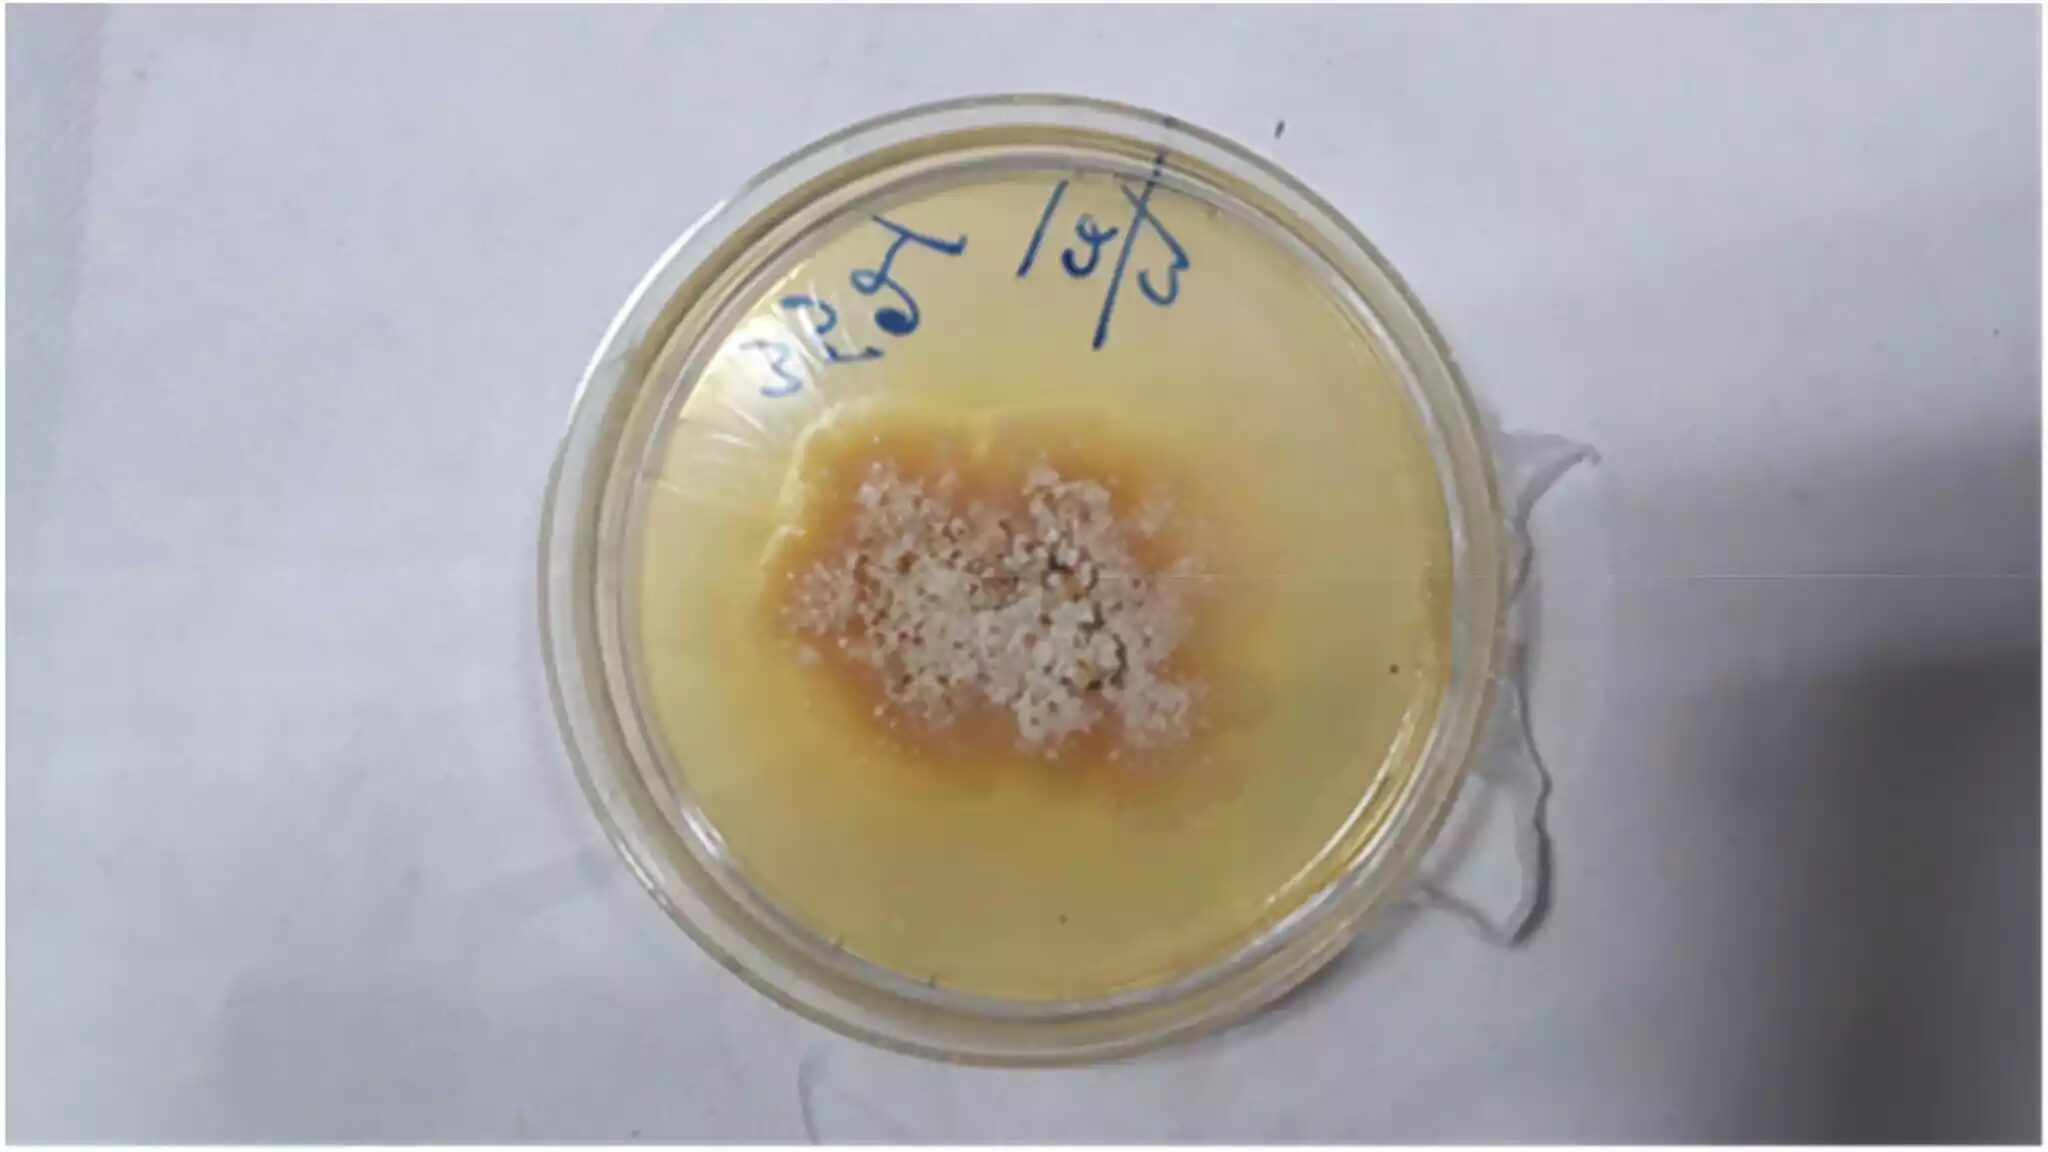 Chondrostereum purpureum petri dish